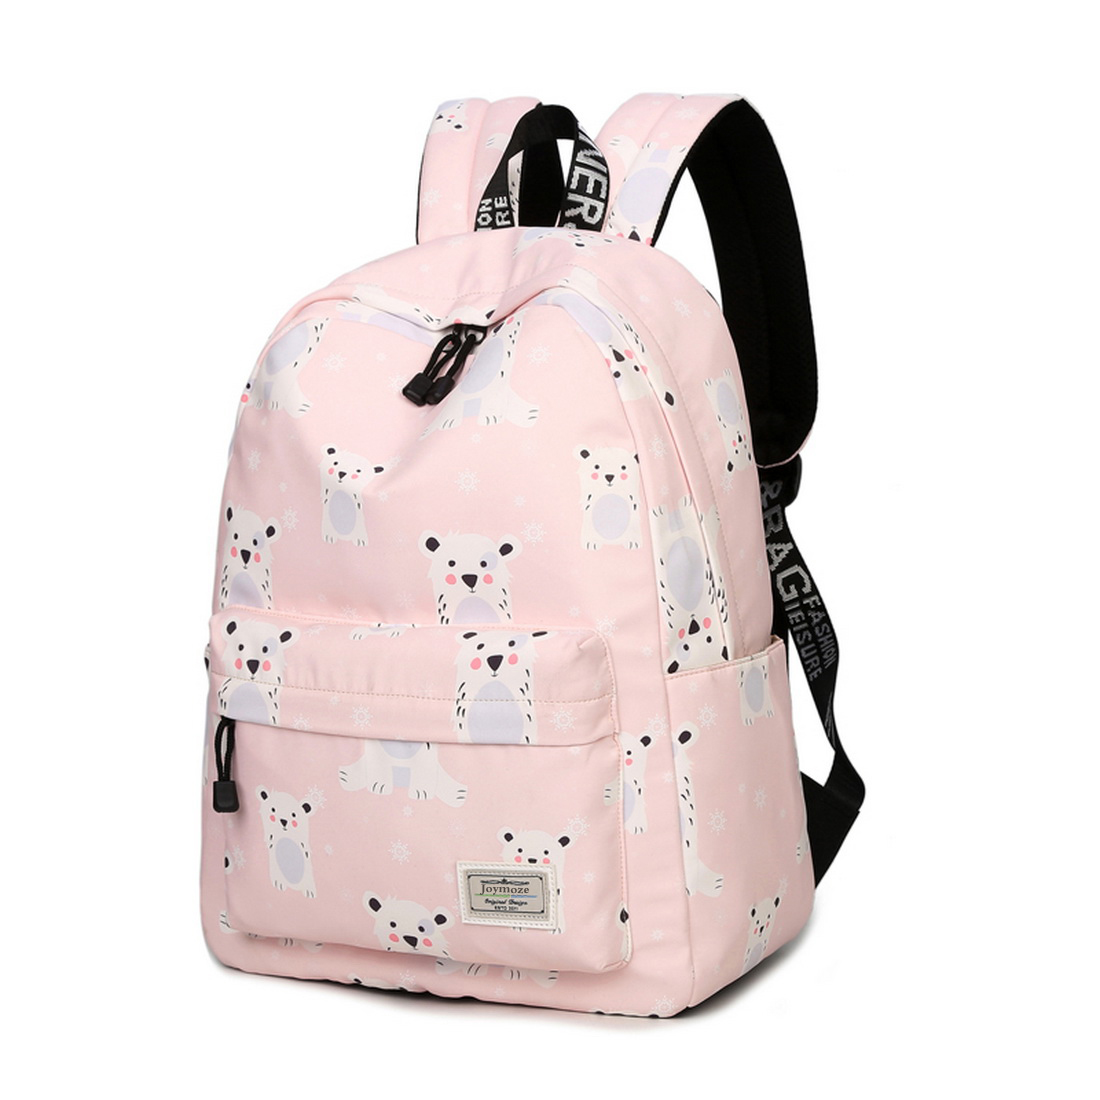 Joymoze Waterproof School Backpack for Girls Middle School Cute Bookbag Daypack for Women Pink 843